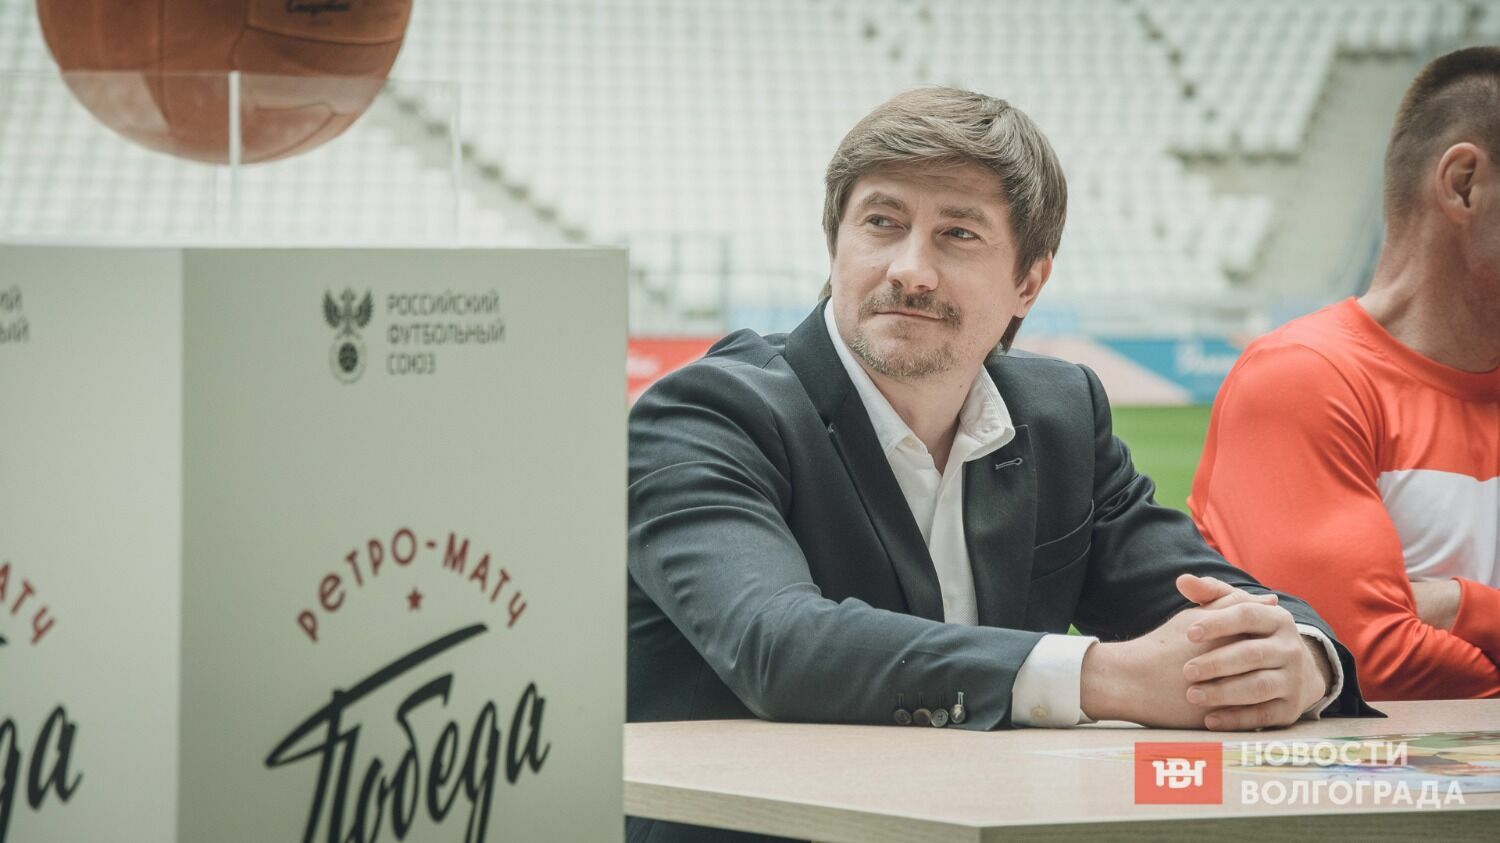 Ведущим мероприятия на стадионе «Волгоград Арена» стал известный спортивный комментатор Виктор Гусев.